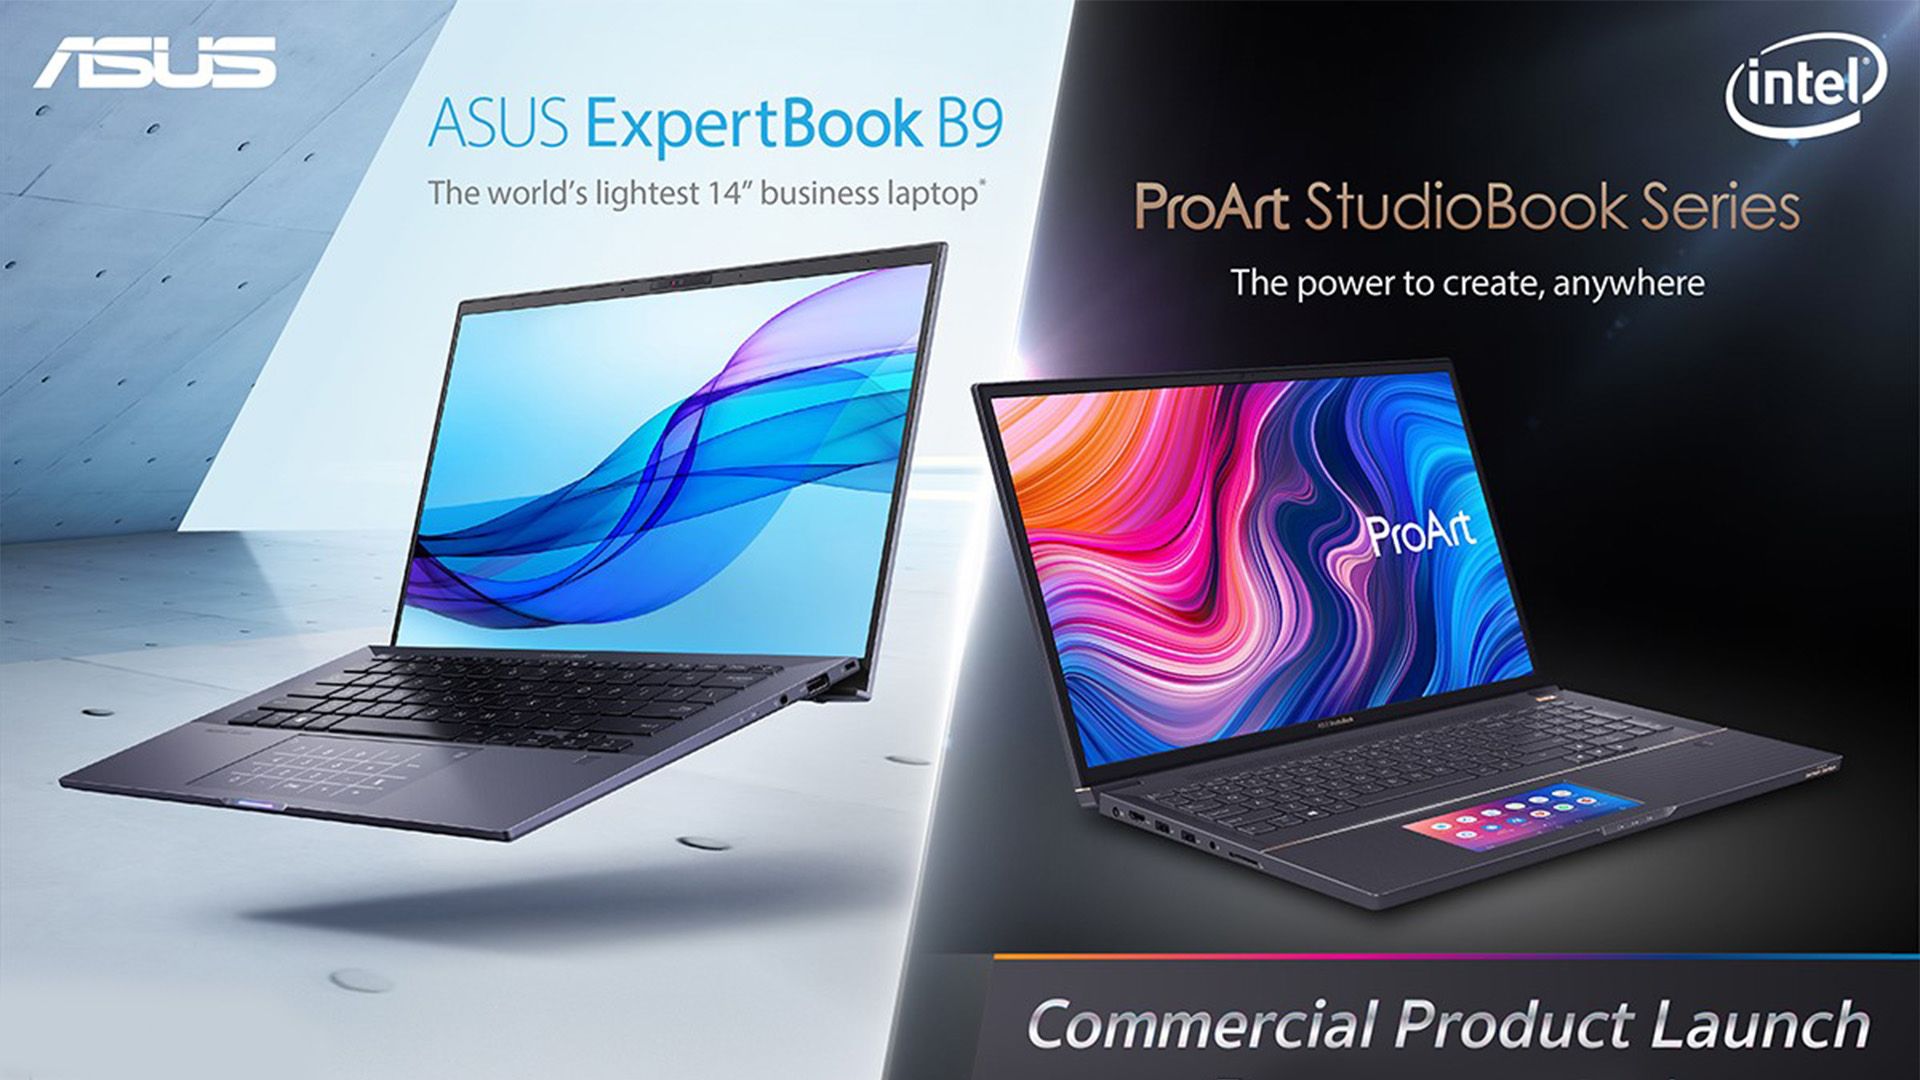 ASUS เปิดตัว ExpertBook B9 โน้ตบุ๊คเบาที่สุดในโลก และ ProArt StudioBook สายทำงาน 3D มืออาชีพ